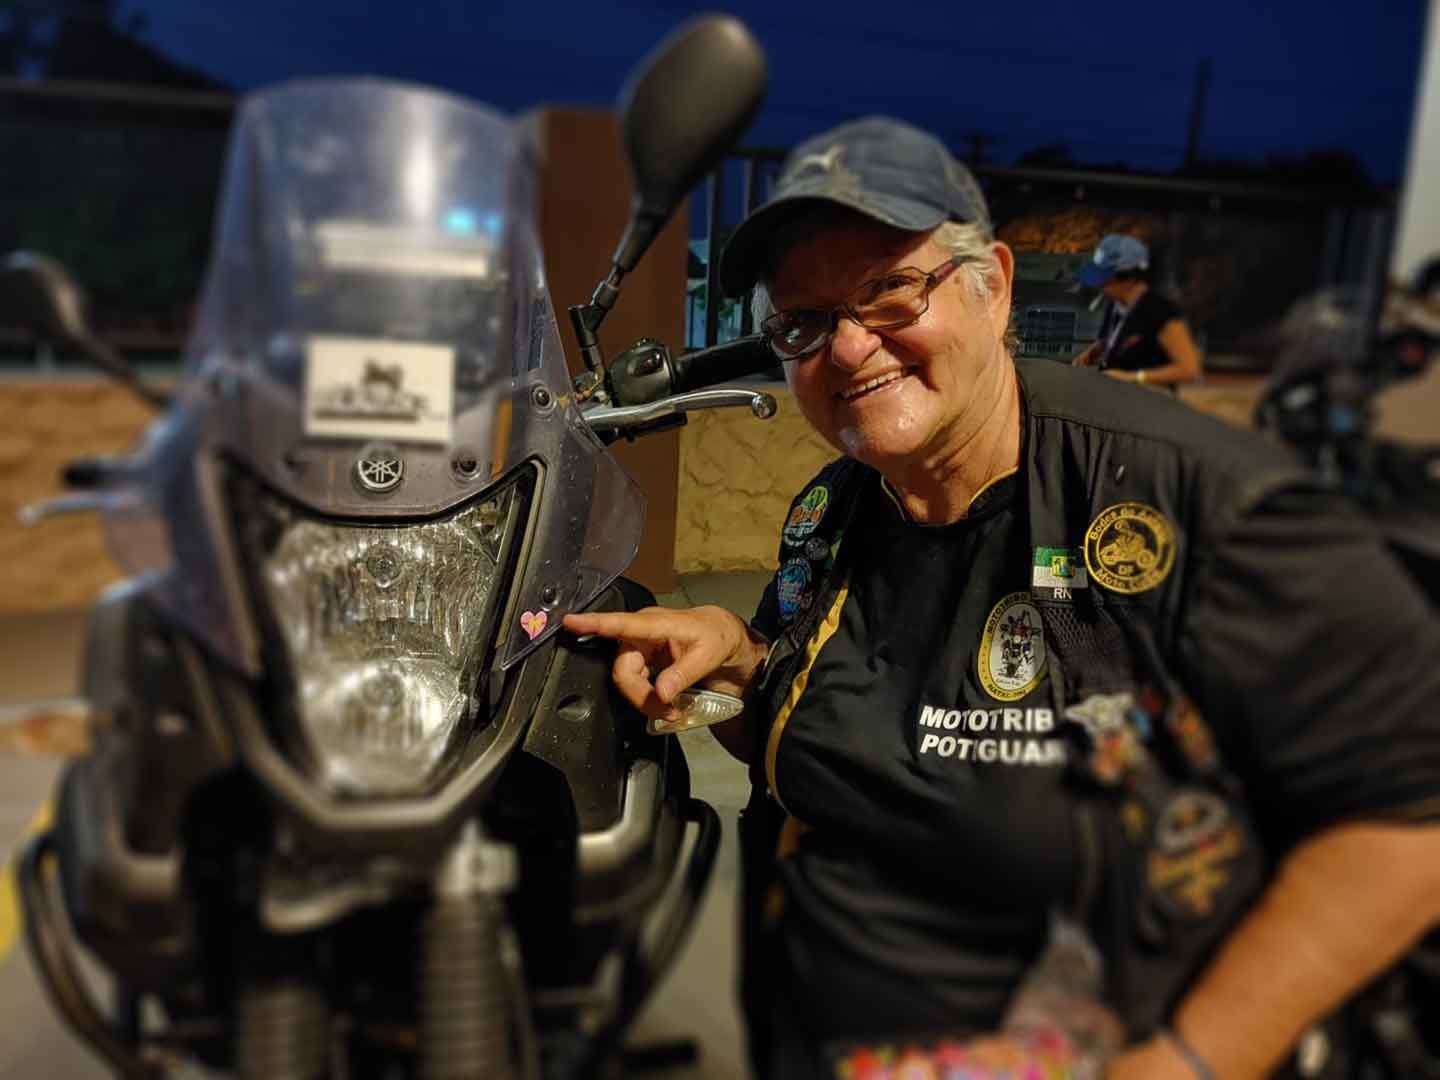 Motociclista BRz de 70 anos viaja de moto de Natal (RN) a Santa Vitória (MG) para rever amigas